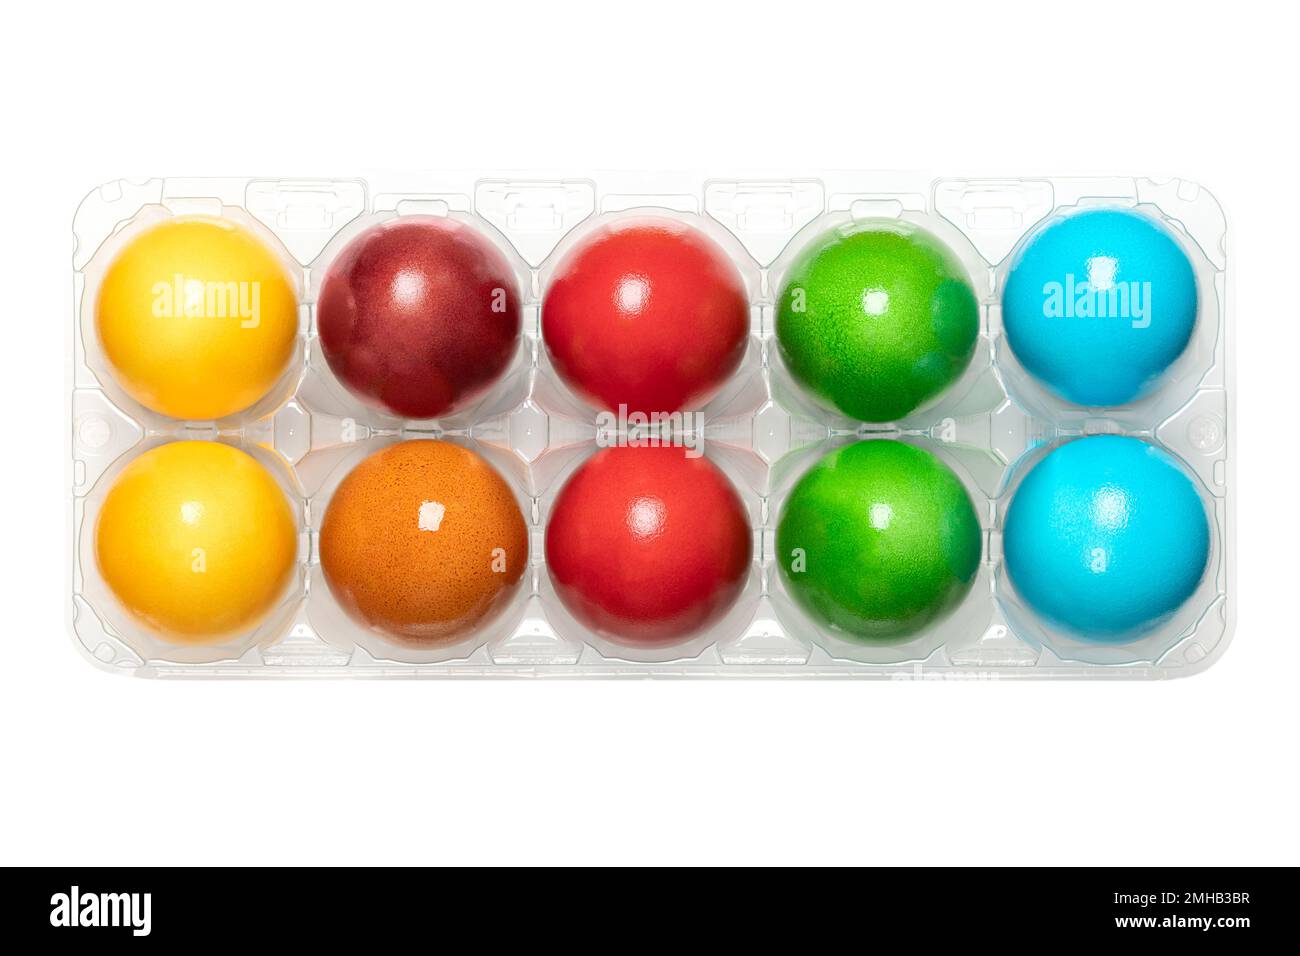 Uova di Pasqua colorate, uova di Paschal colorate, in una scatola di uova di plastica trasparente. Uova di pollo tinte, sode, usate per celebrare la risurrezione di Gesù. Foto Stock